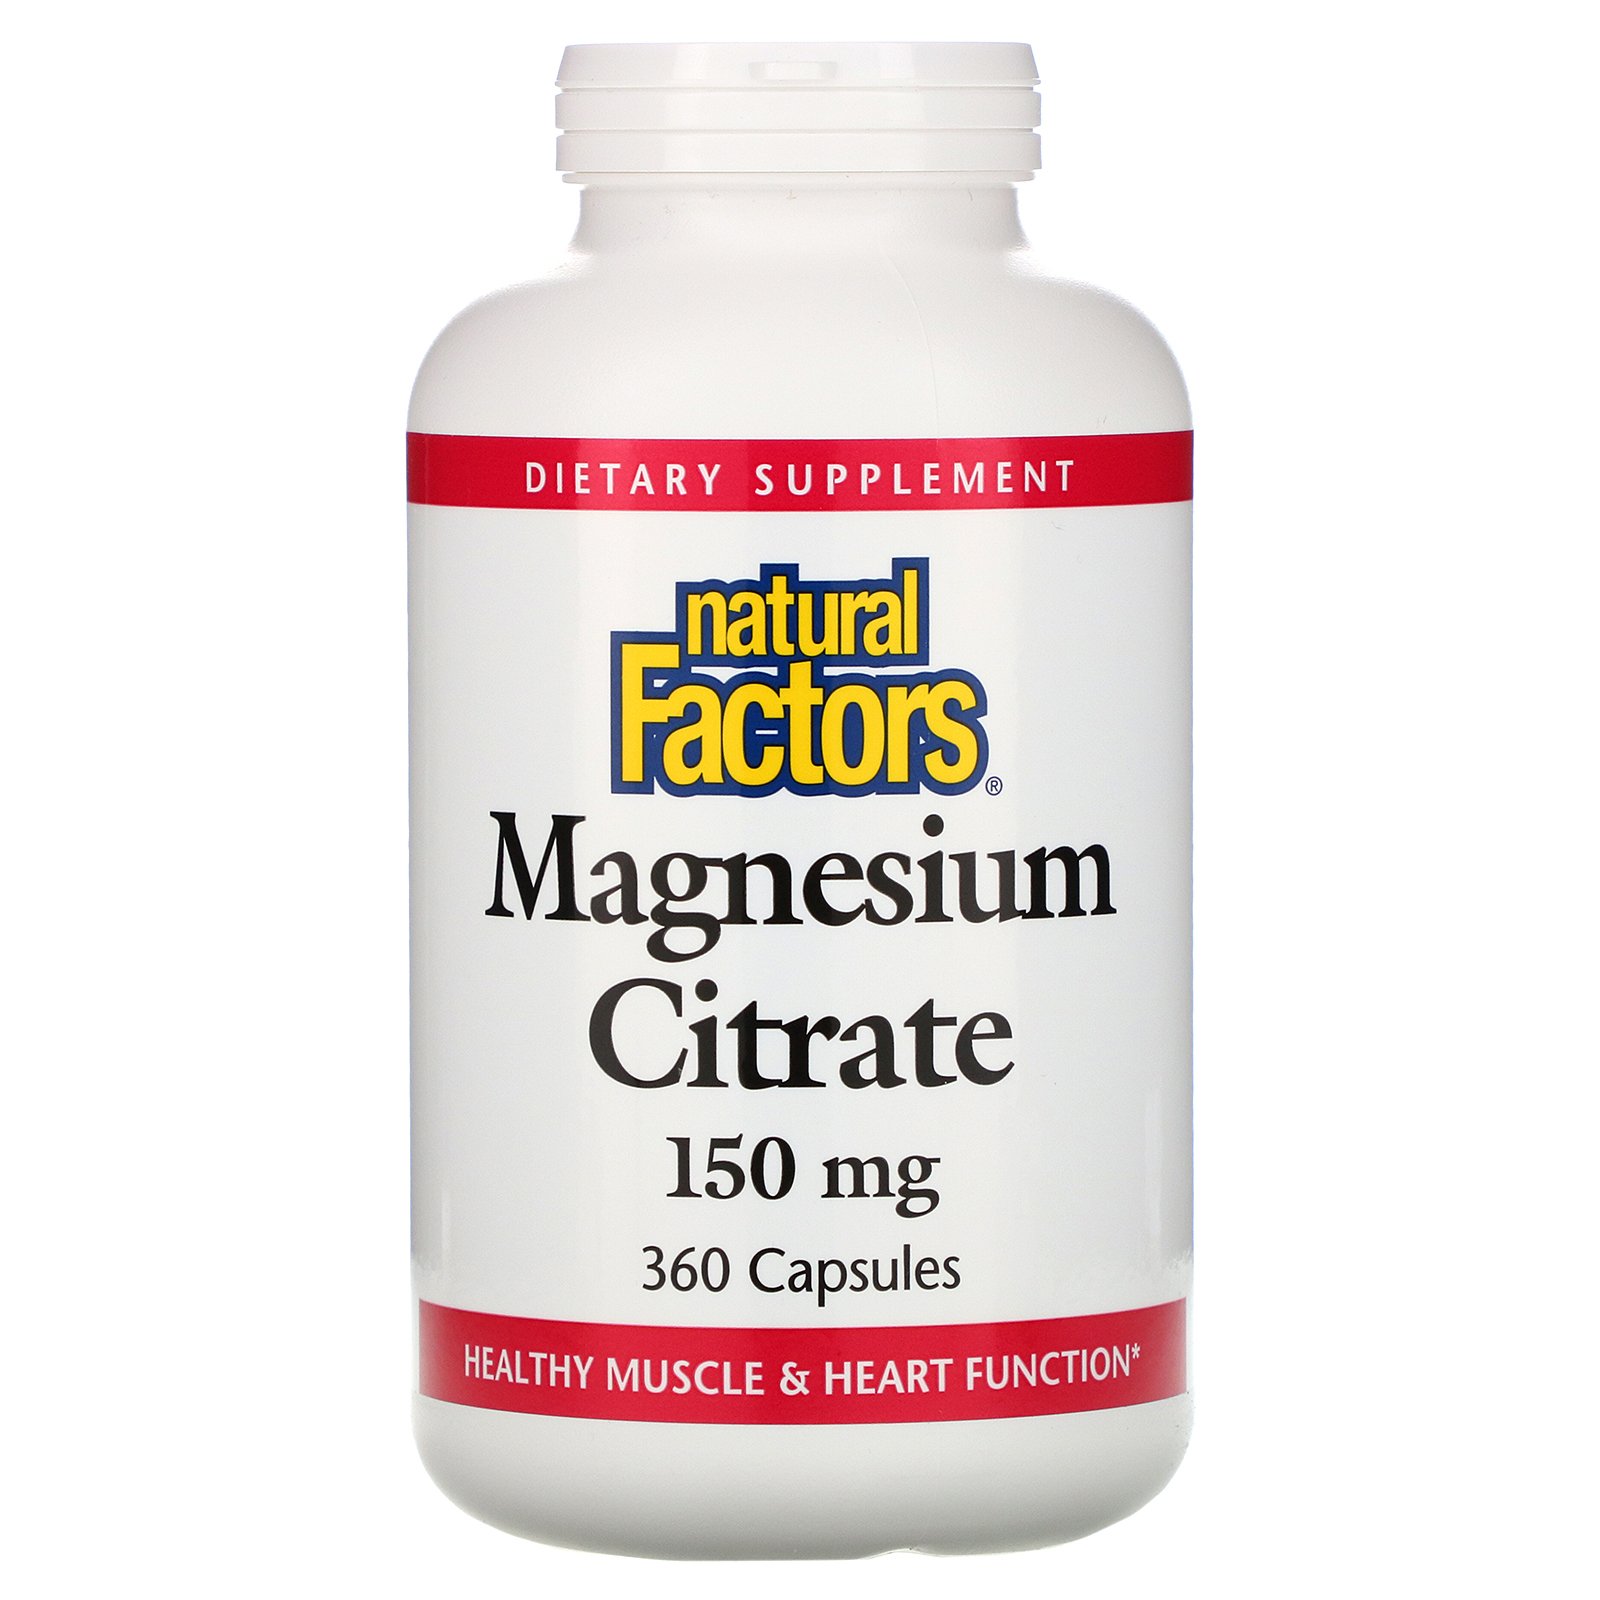 Natural Factors Magnesium Citrate 150 mg 360 Capsules